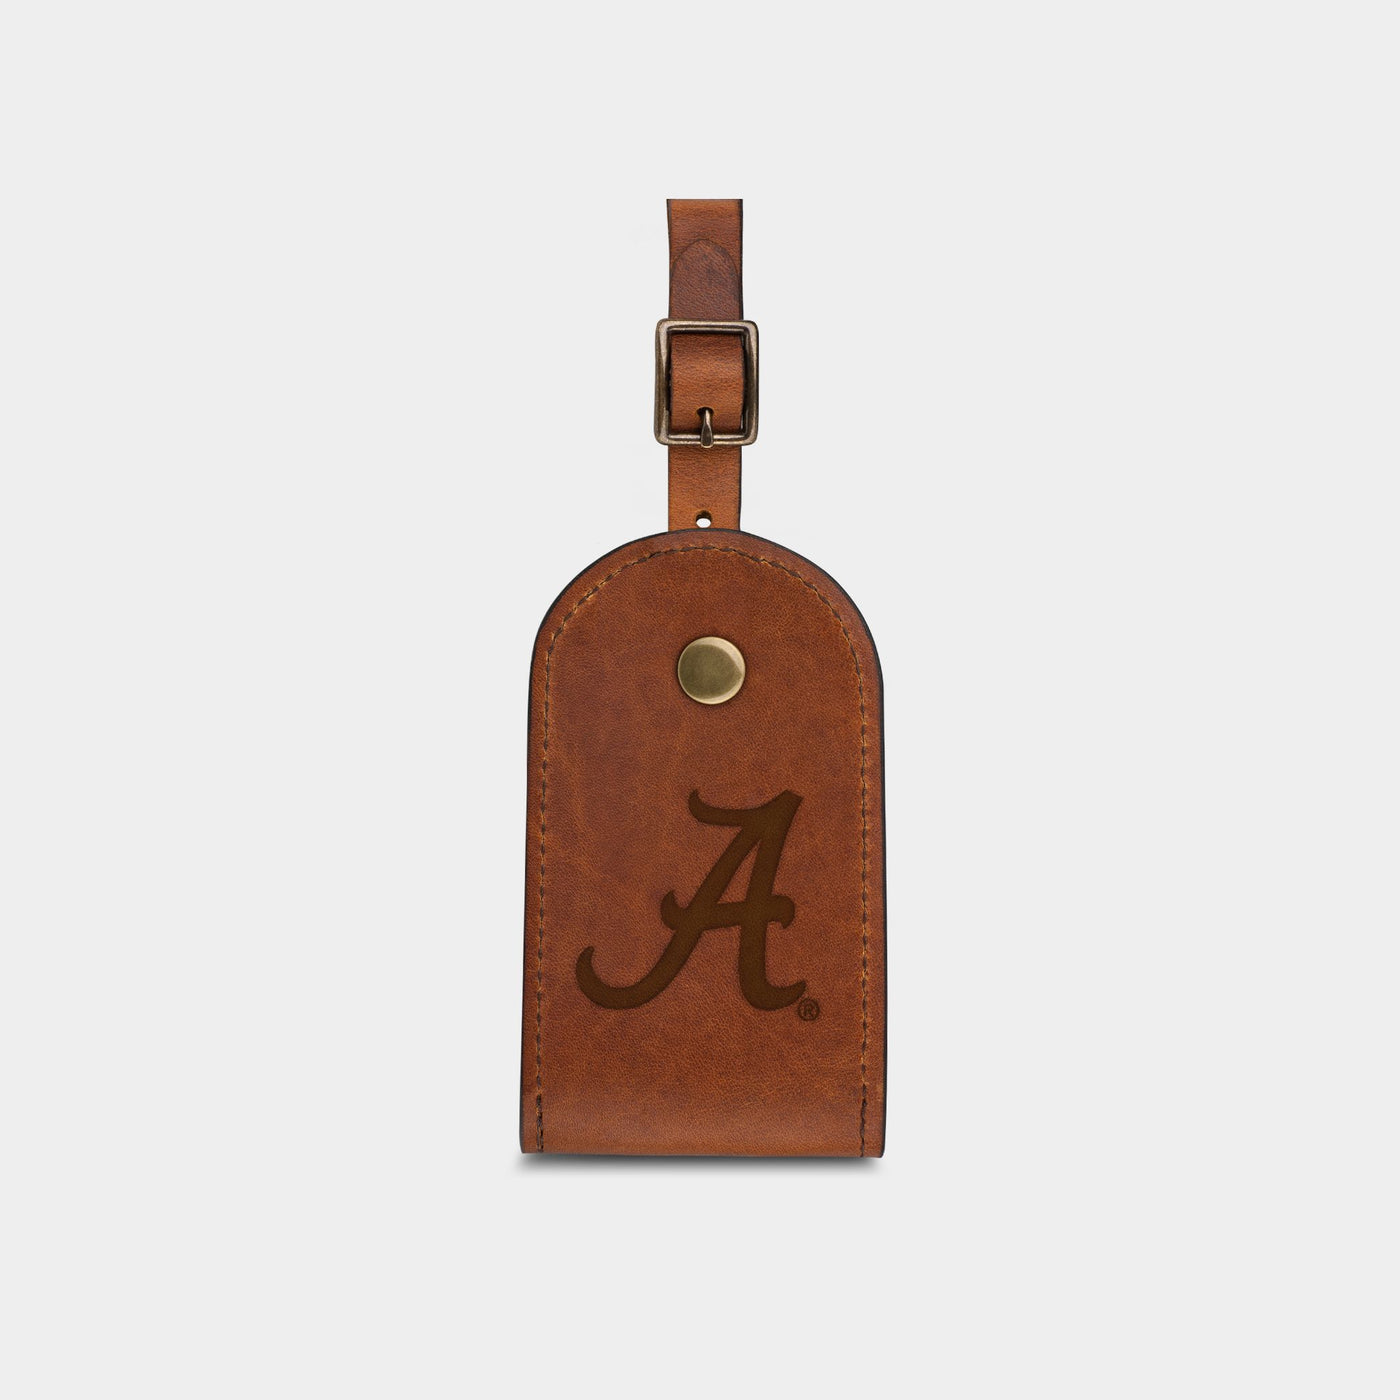 Alabama Crimson Tide "A" Luggage Tag